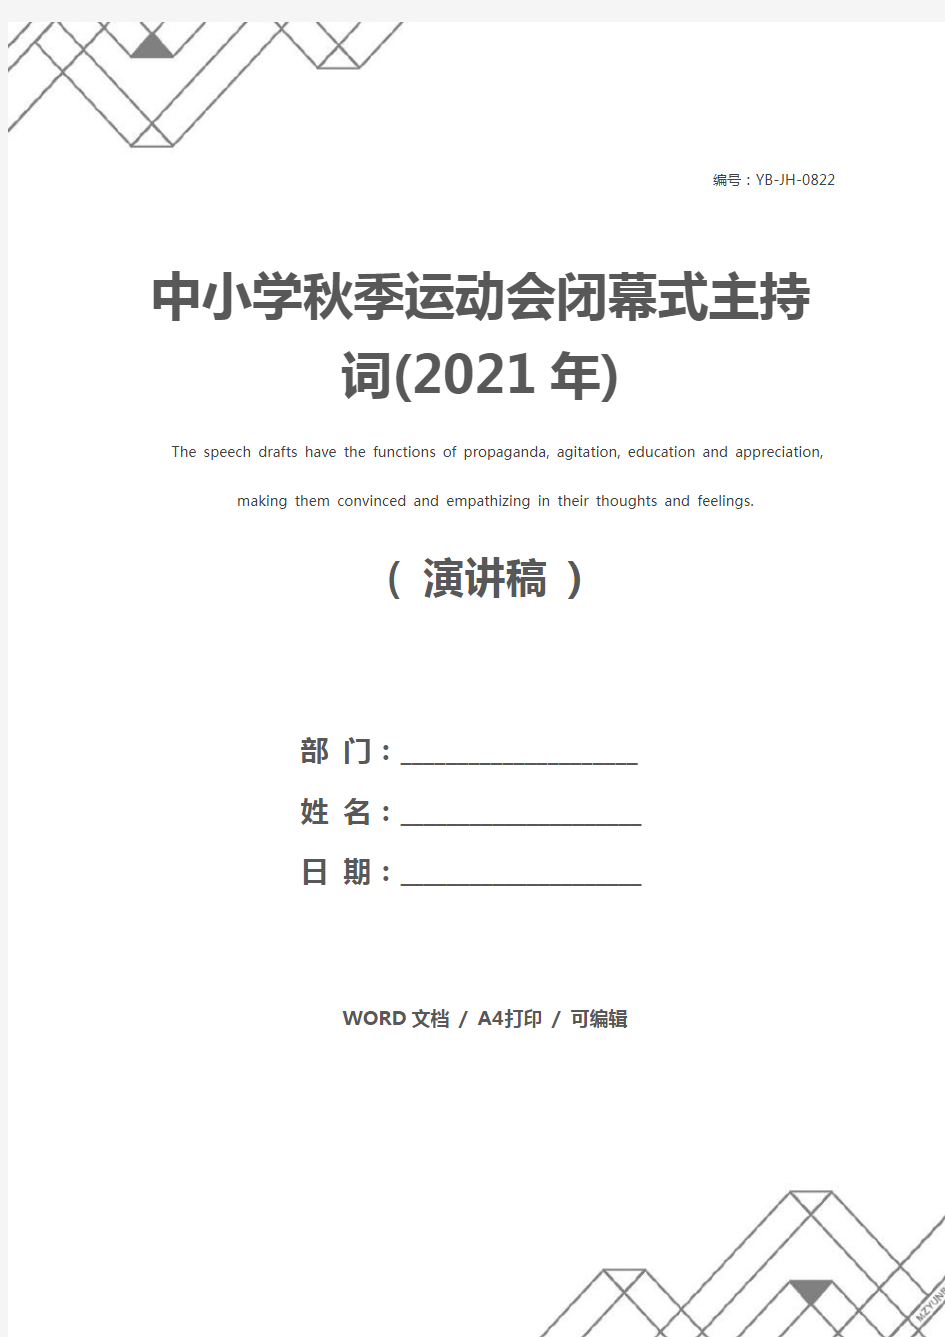 中小学秋季运动会闭幕式主持词(2021年)